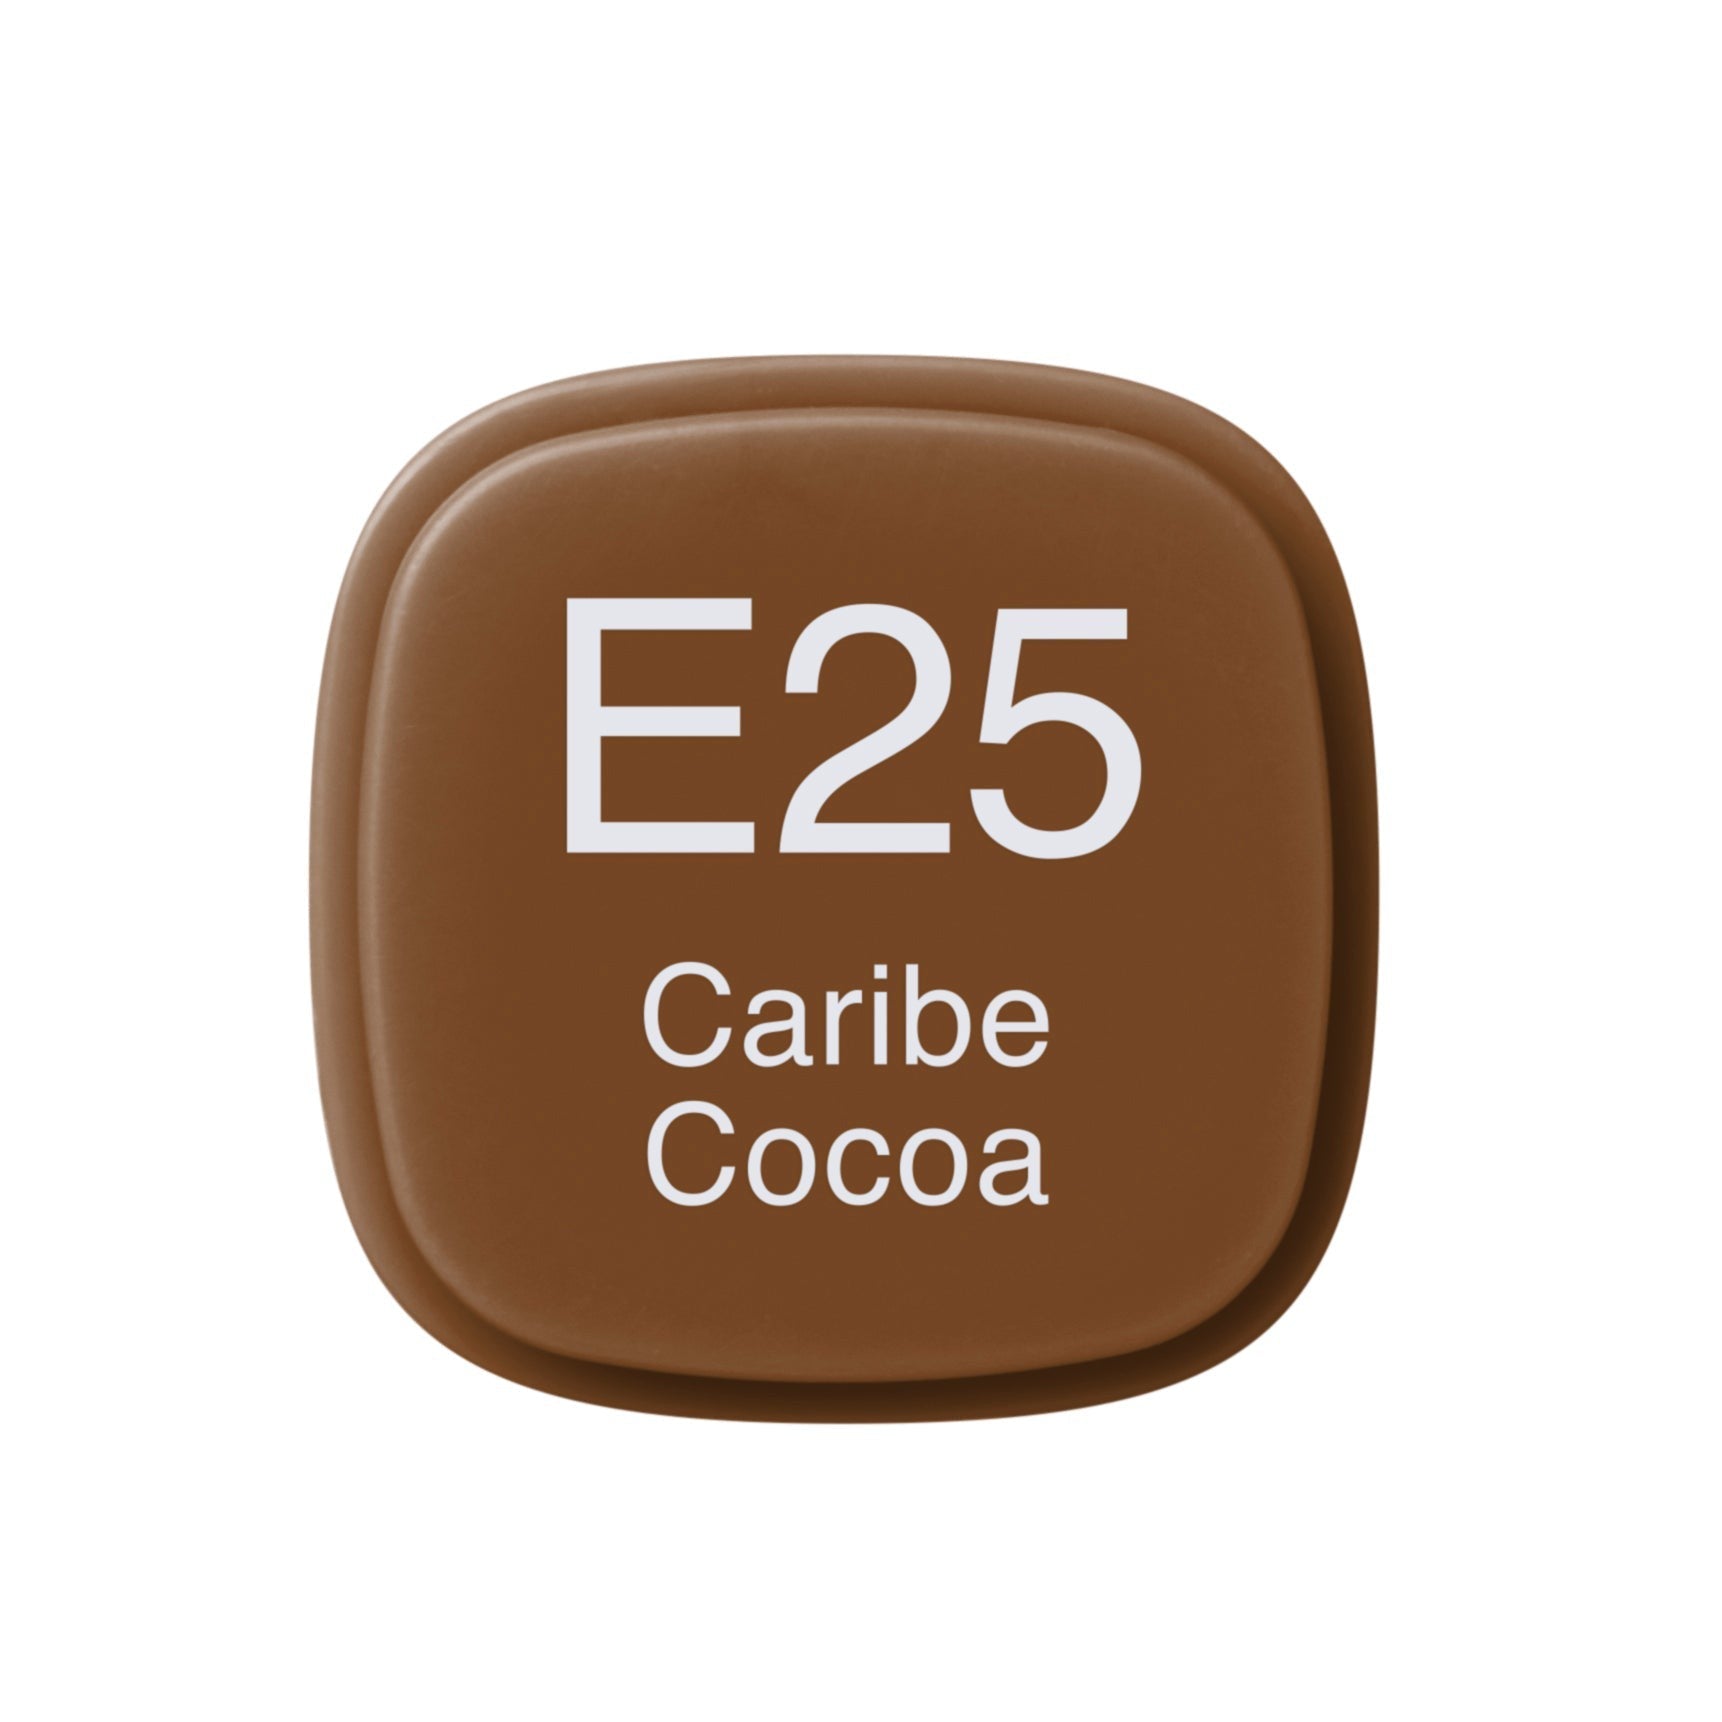 Copic - Original Marker - Caribe Cocoa - E25-ScrapbookPal